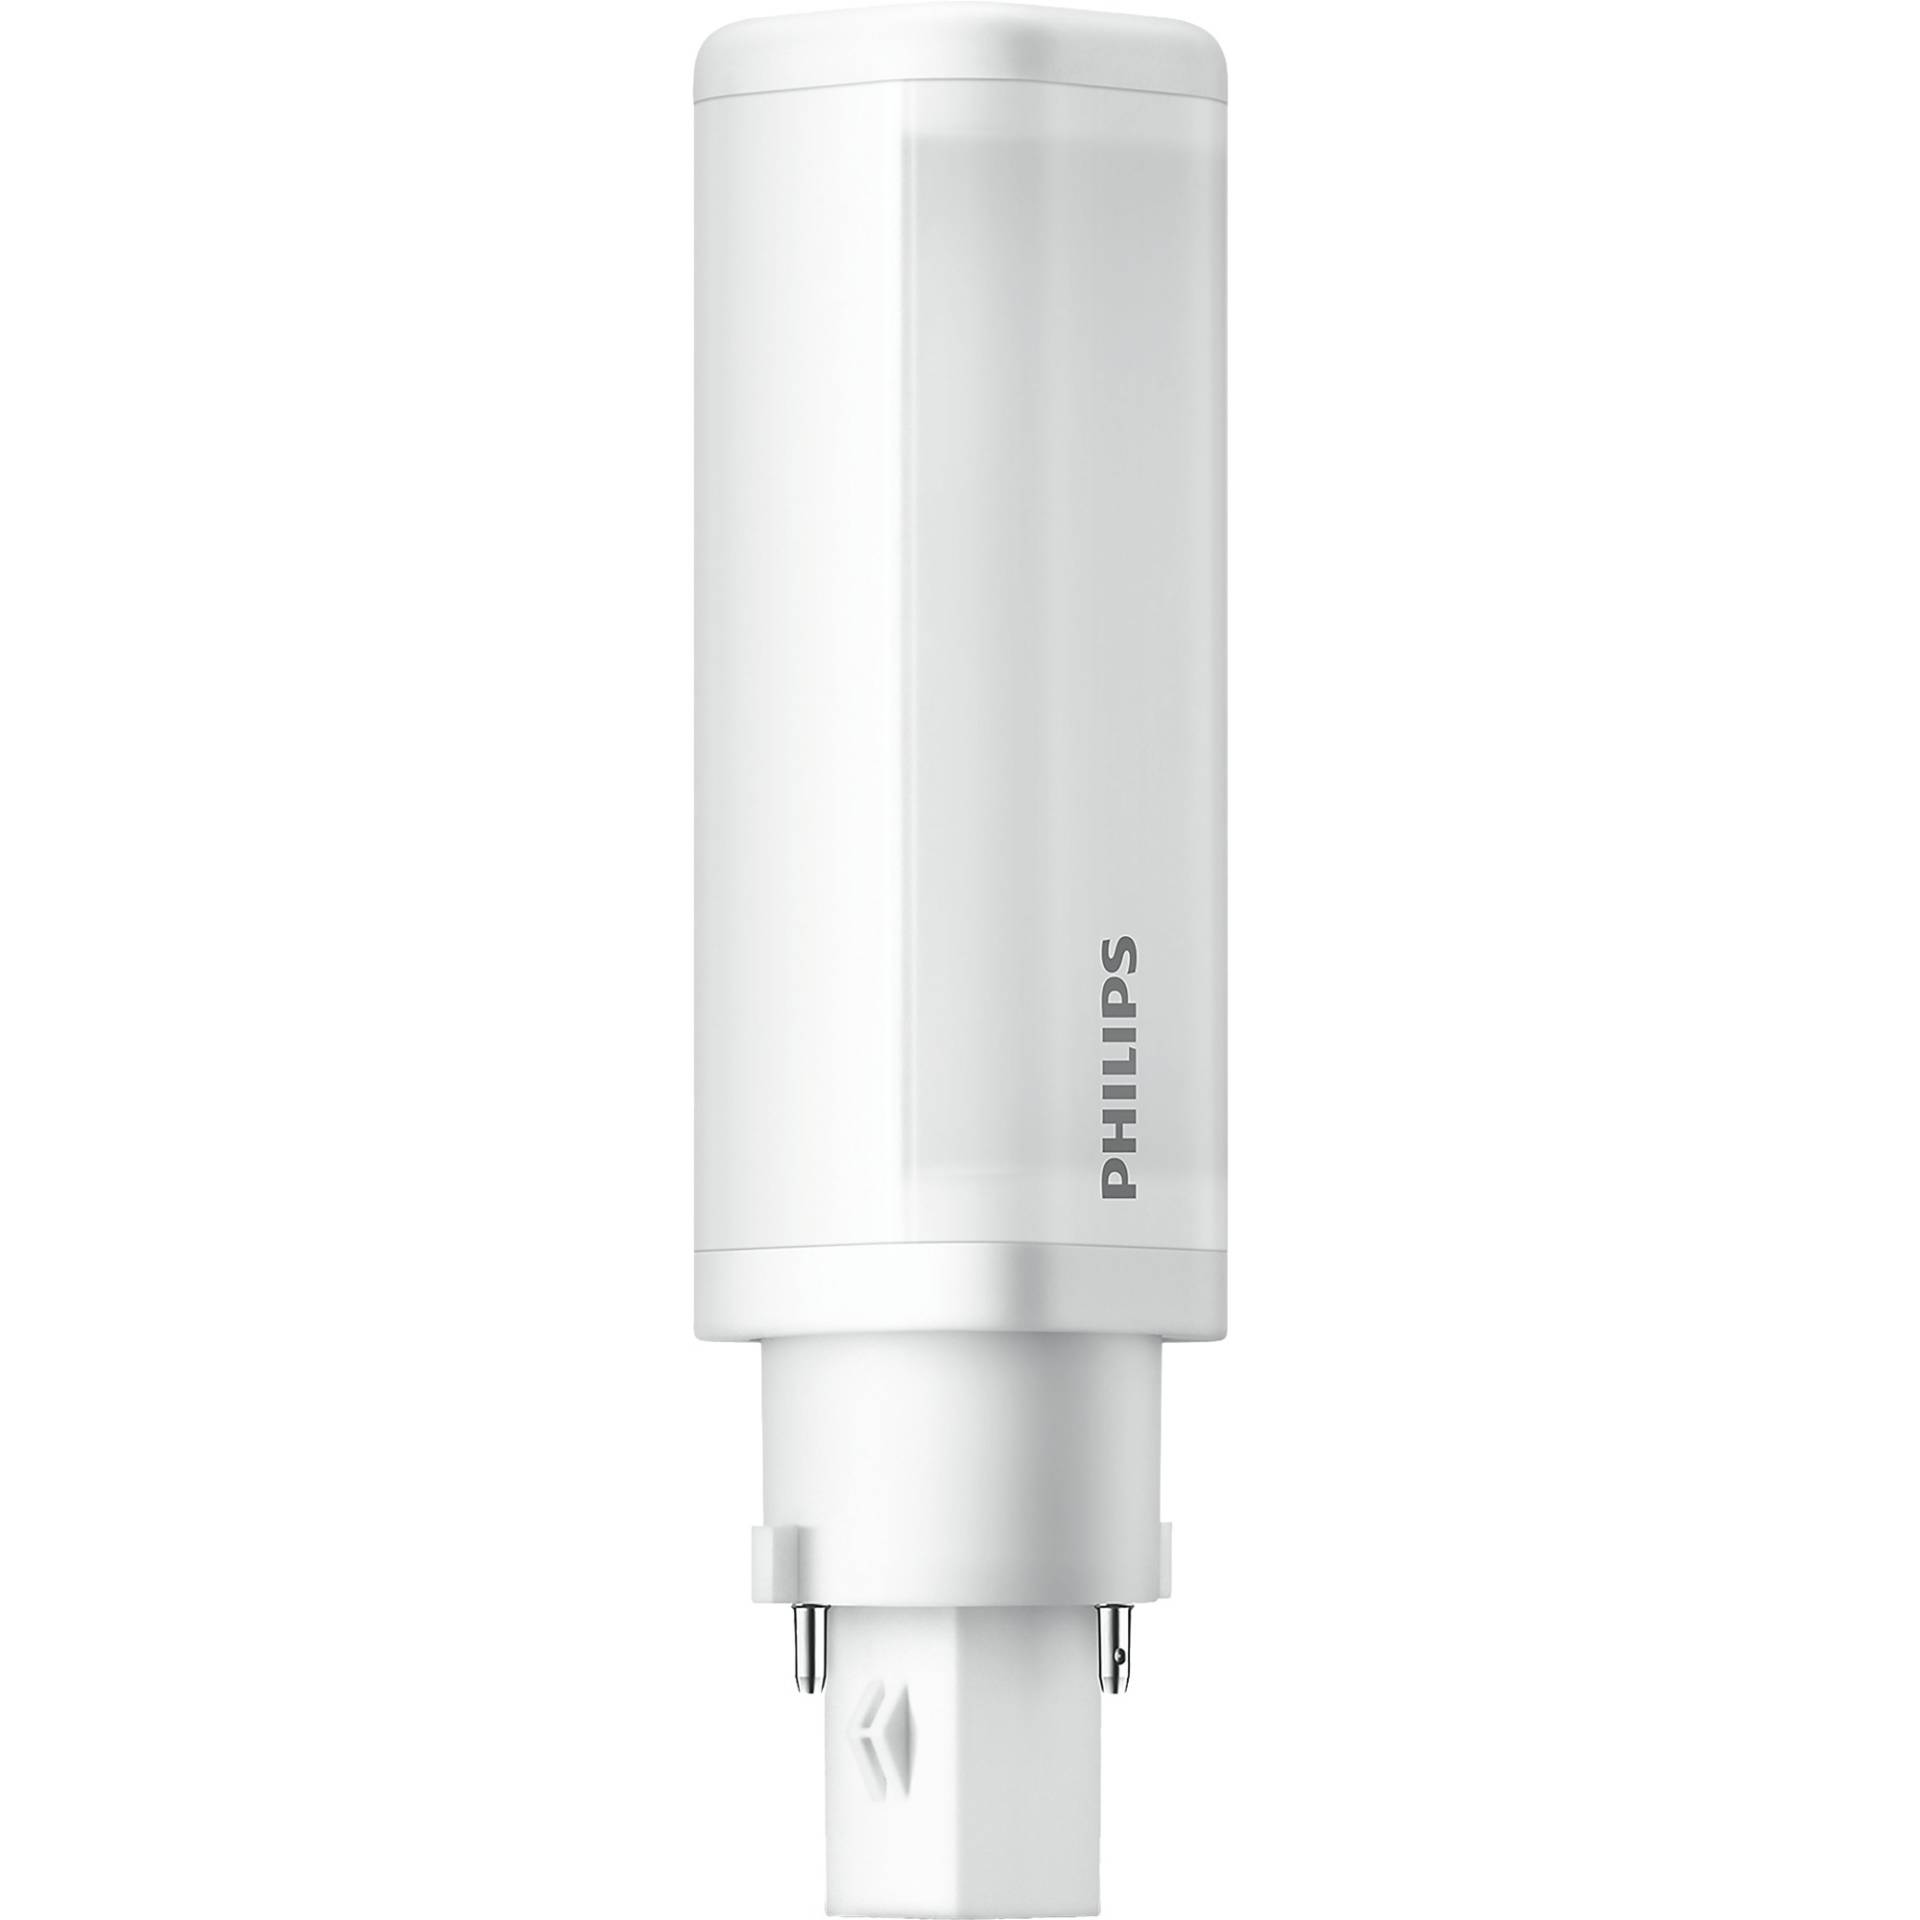 CorePro LED PLC 4,5W 830 2P G24d-1, LED-Lampe von Philips